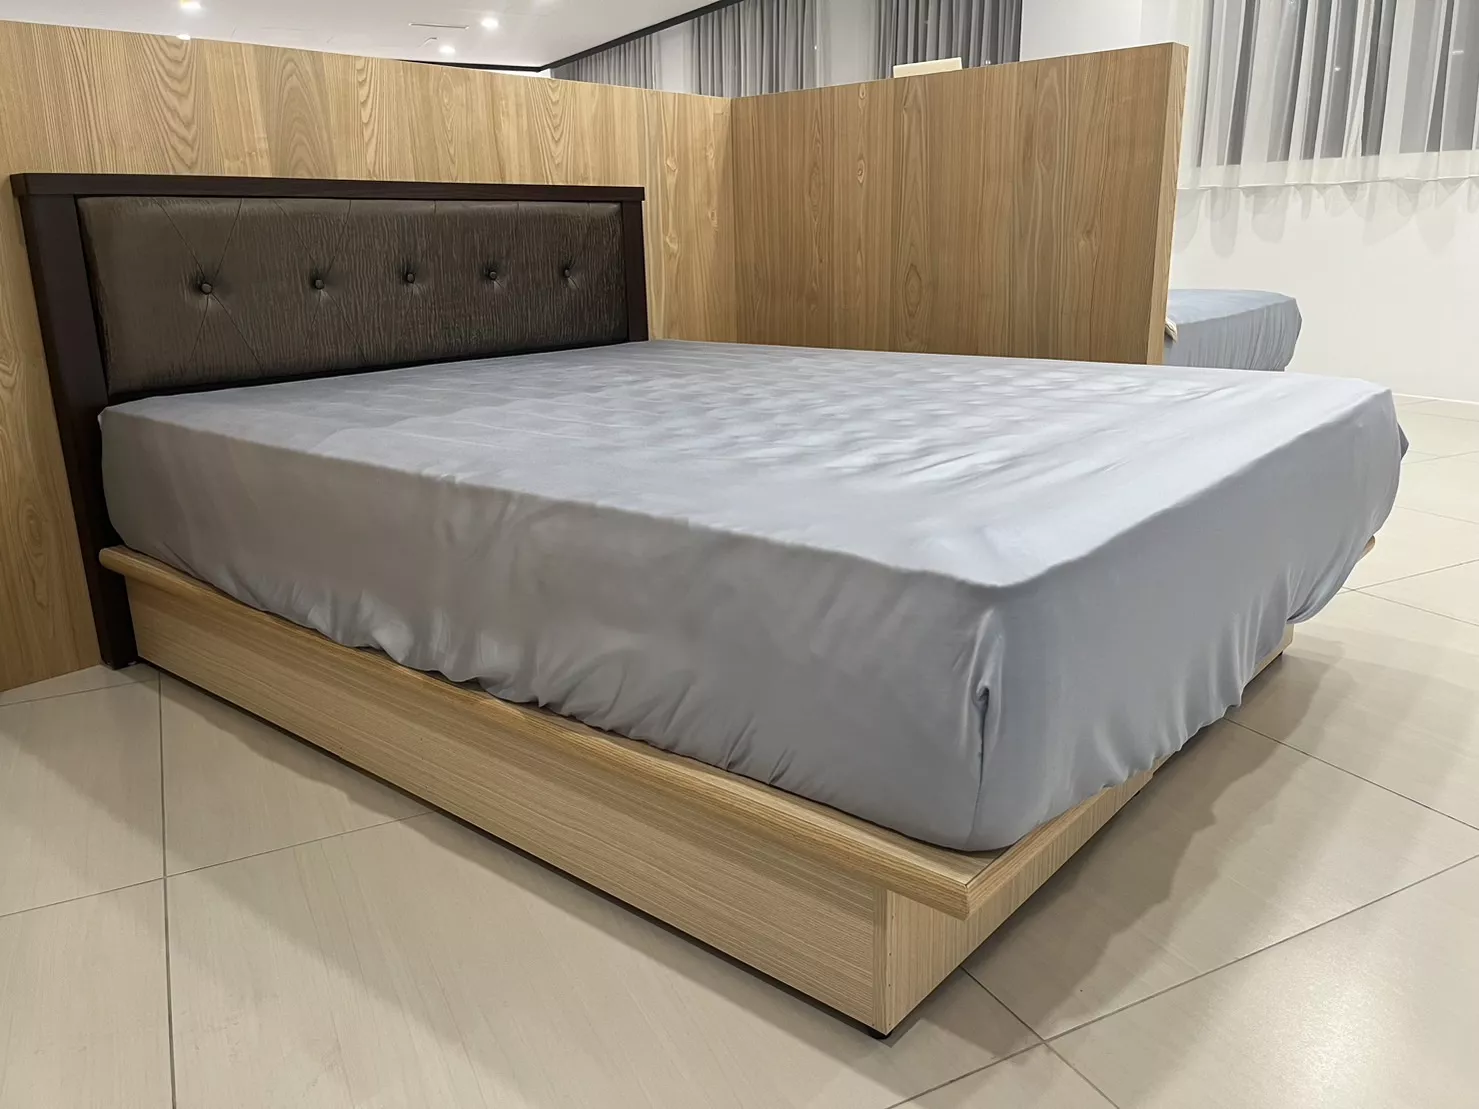 六分板床箱,床架,床頭板